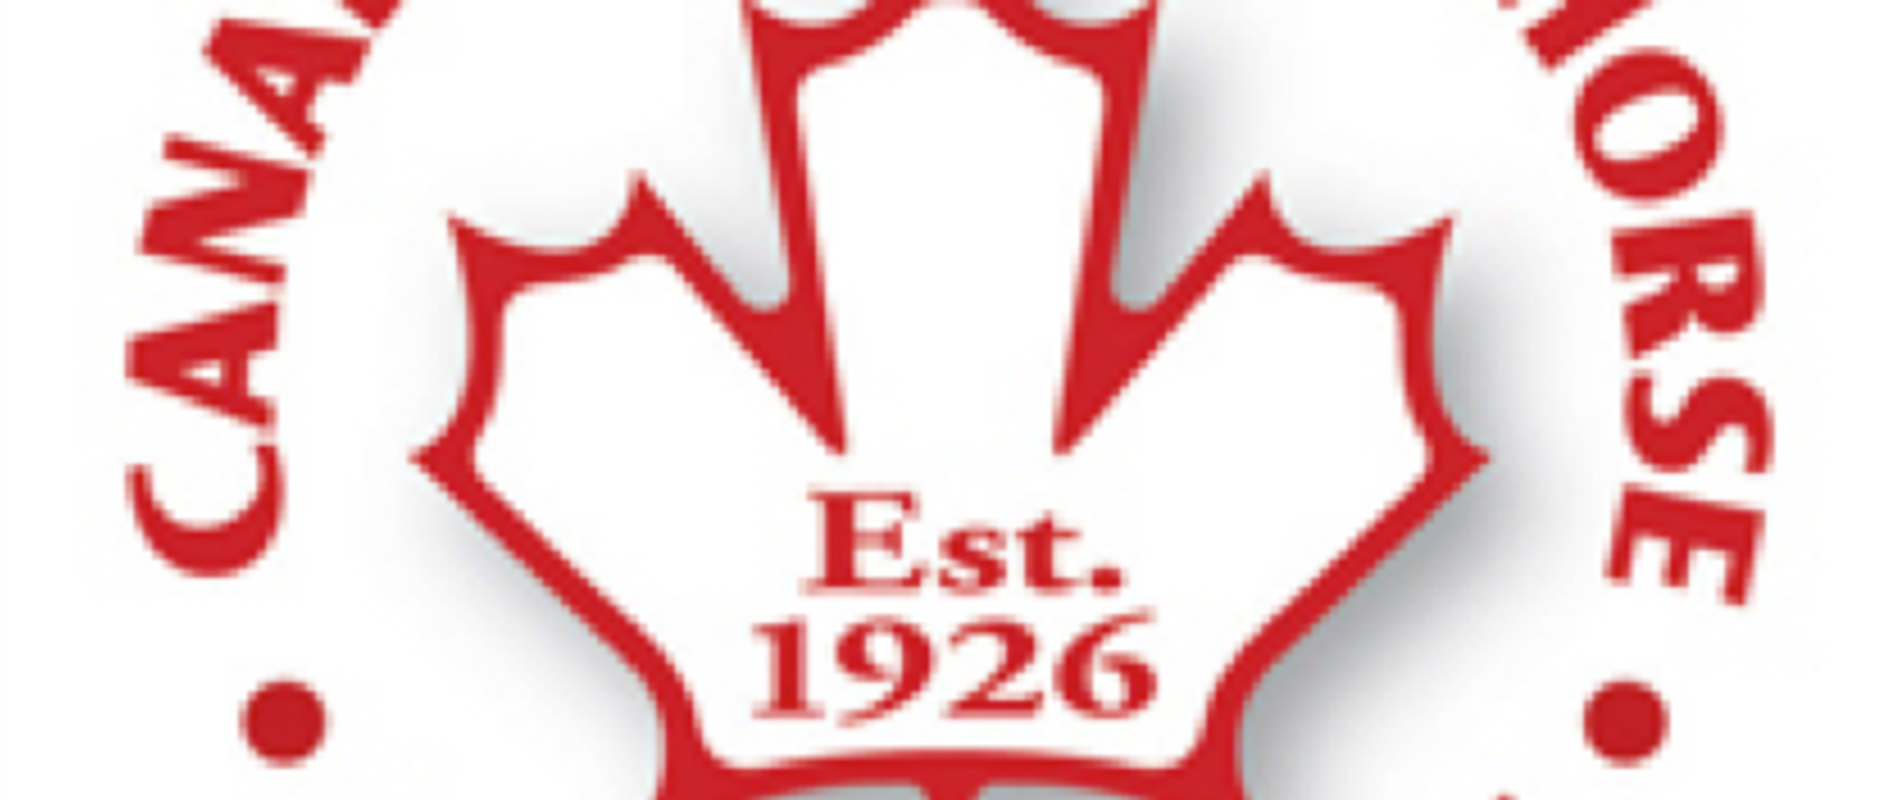 Red and white CSHA logo